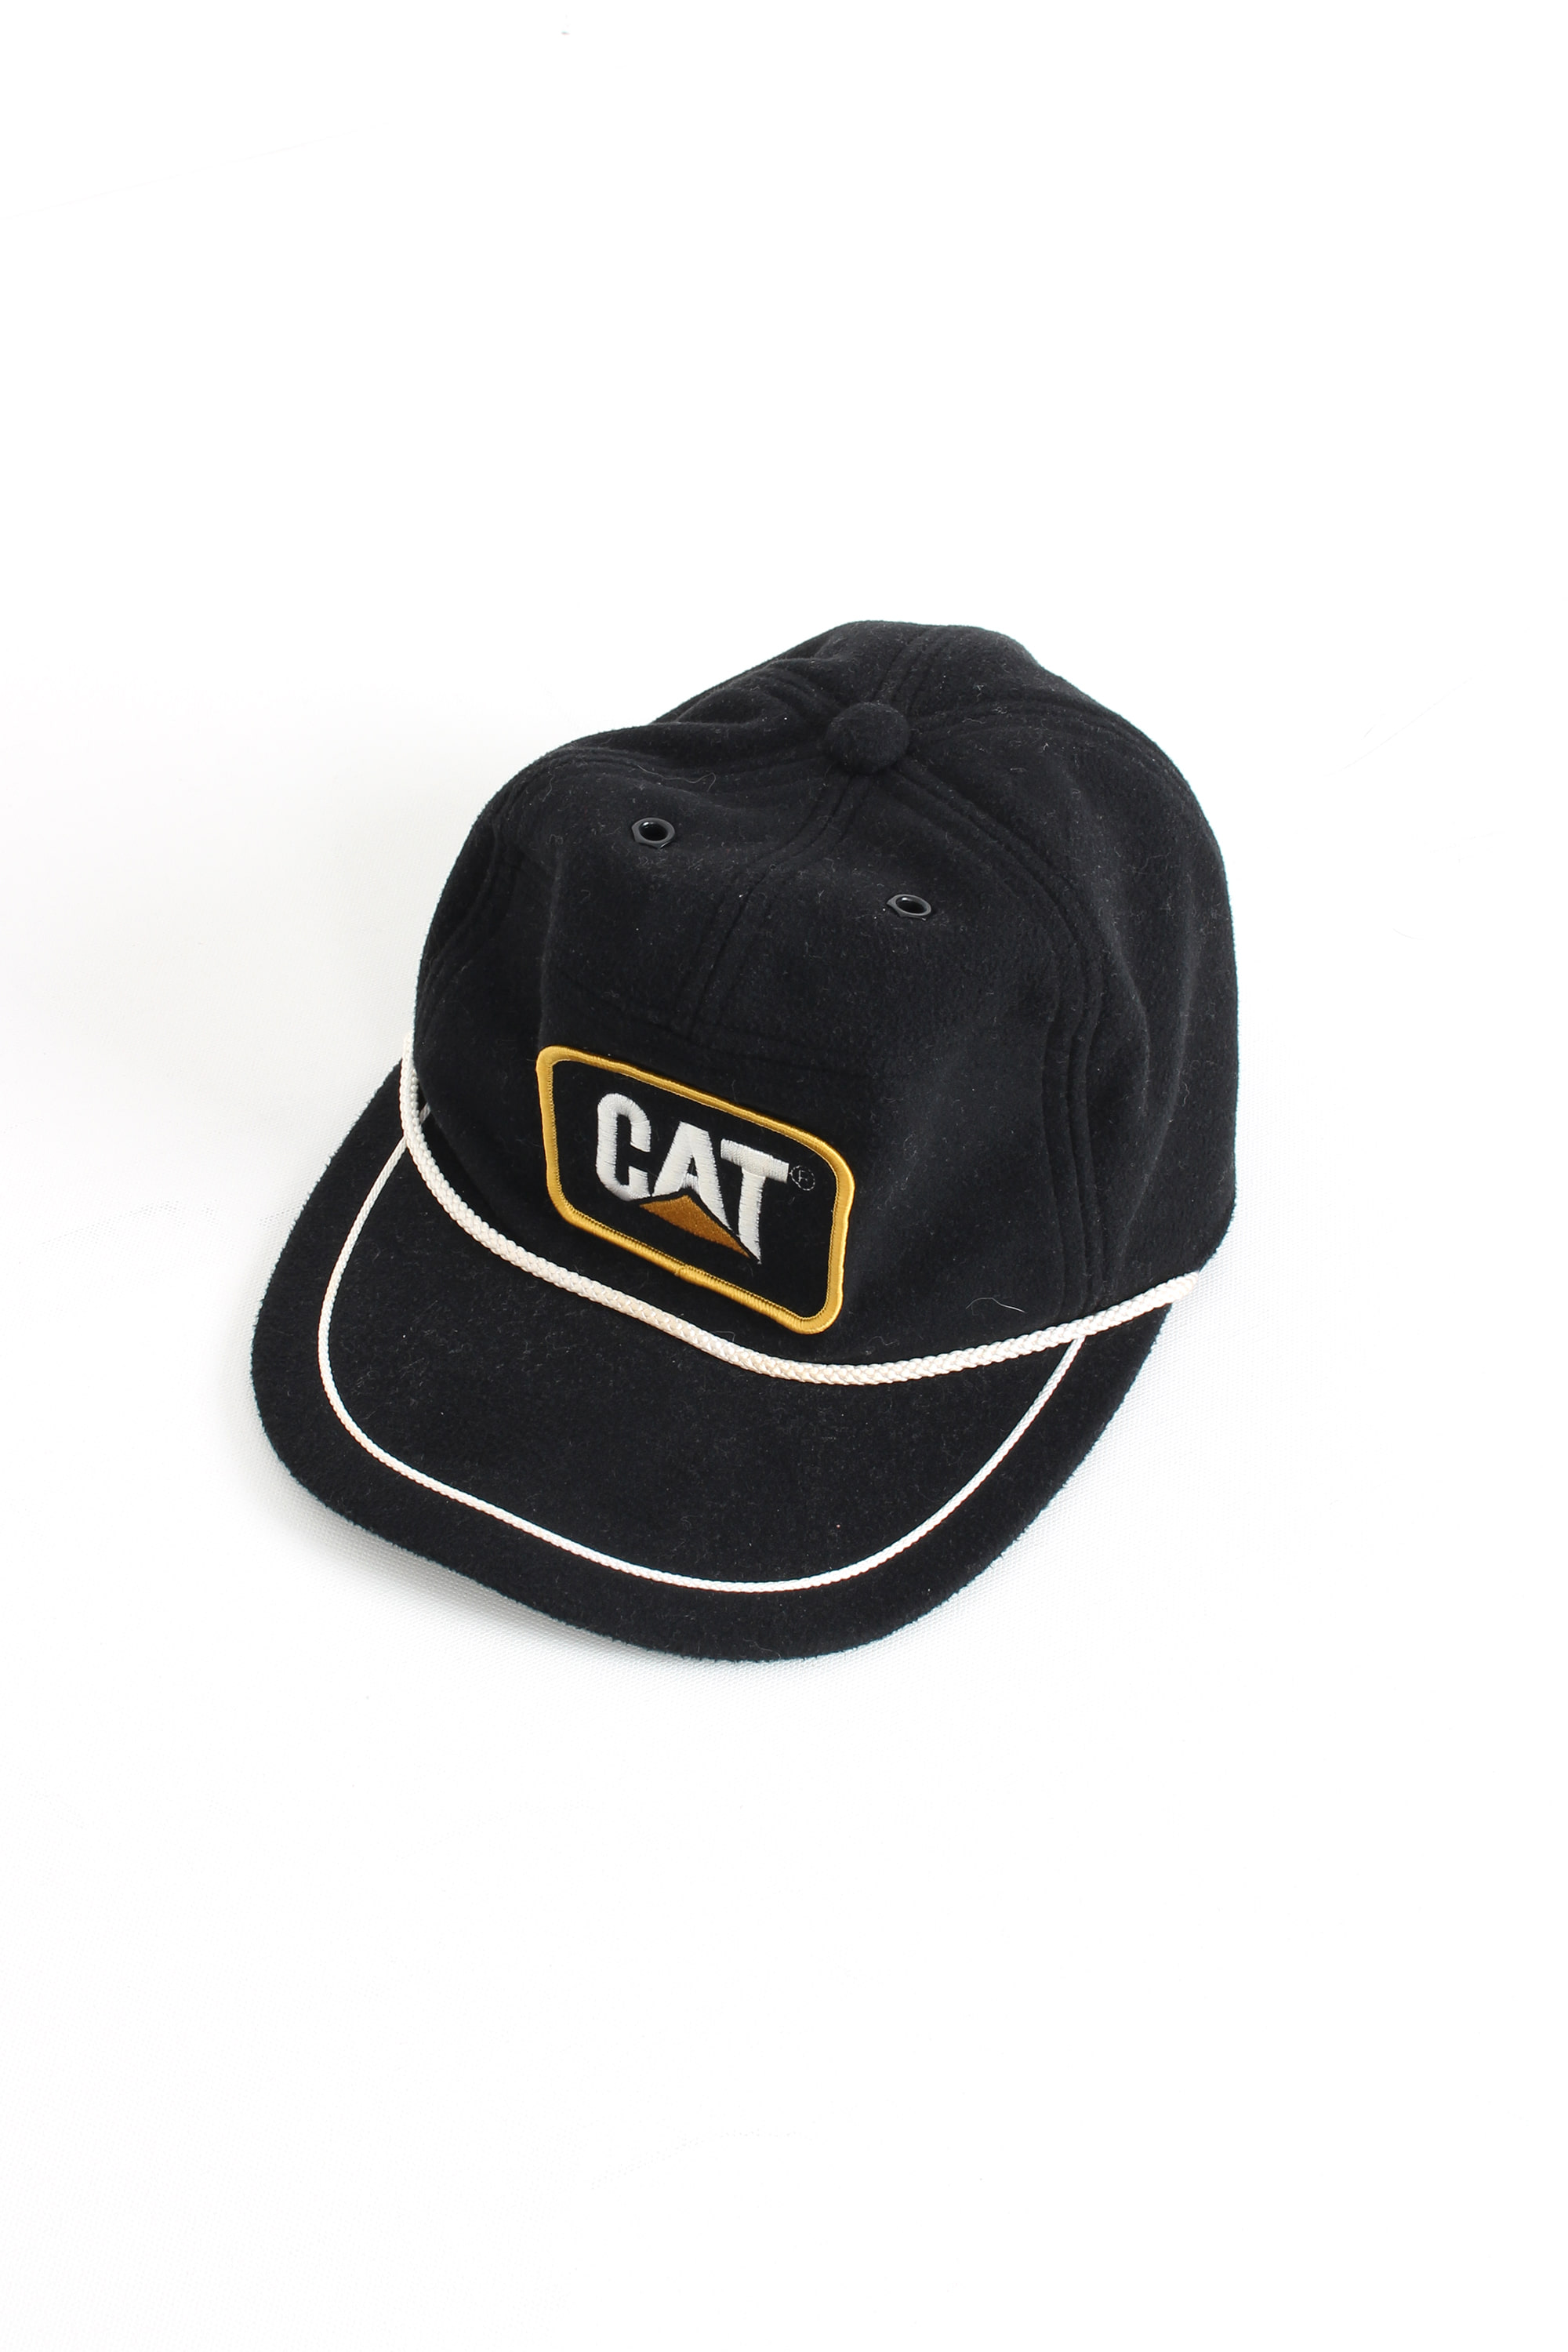 CAT Company Cap